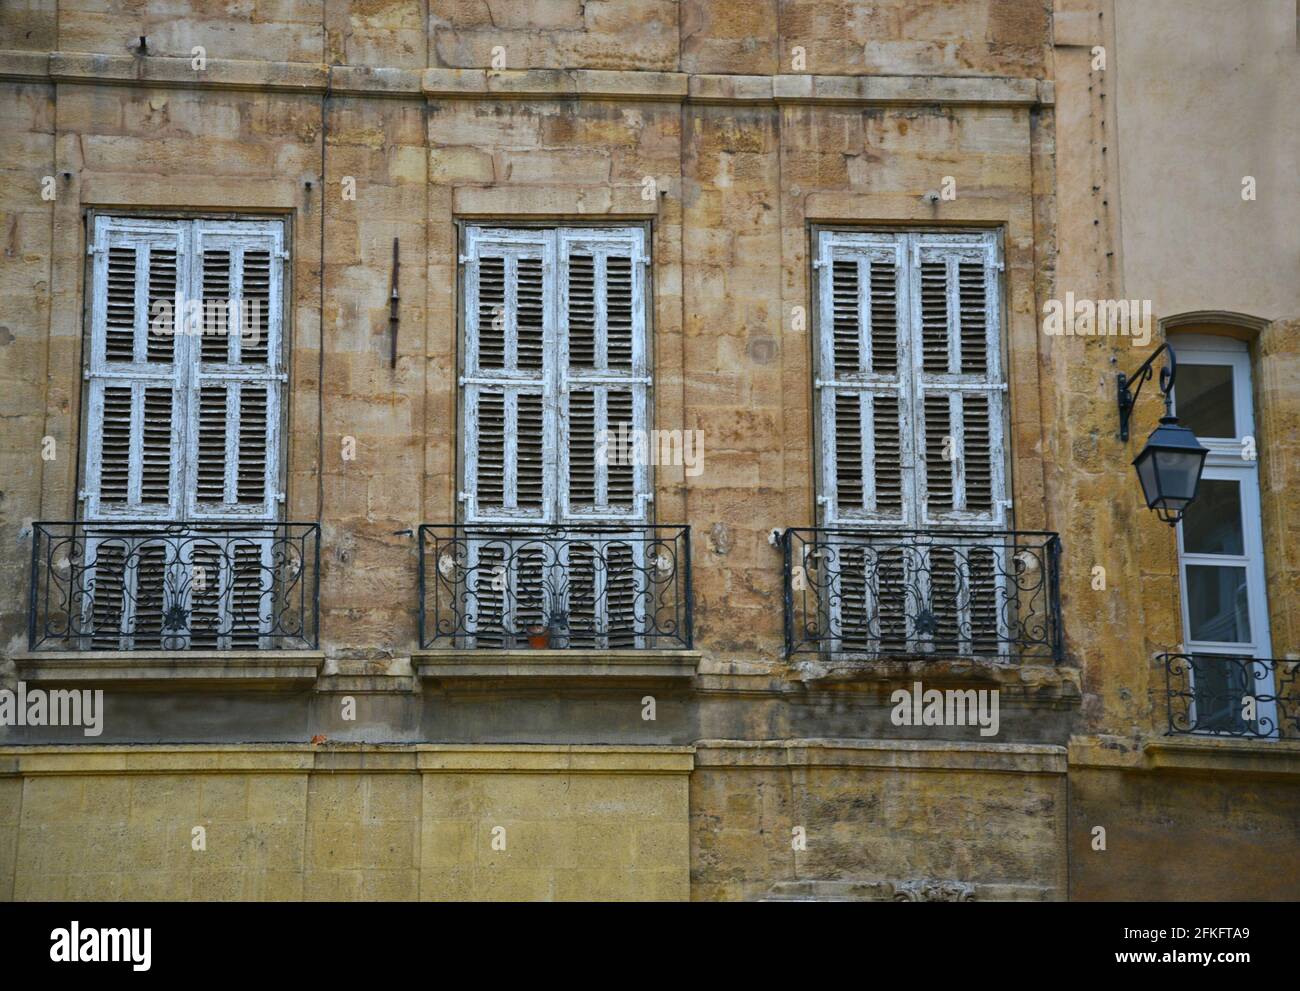 Façade de style provençal avec mur en pierre, volets bleu clair et balustrade de balcon en fer fait à la main à Aix-en-Provence Marseille, France. Banque D'Images